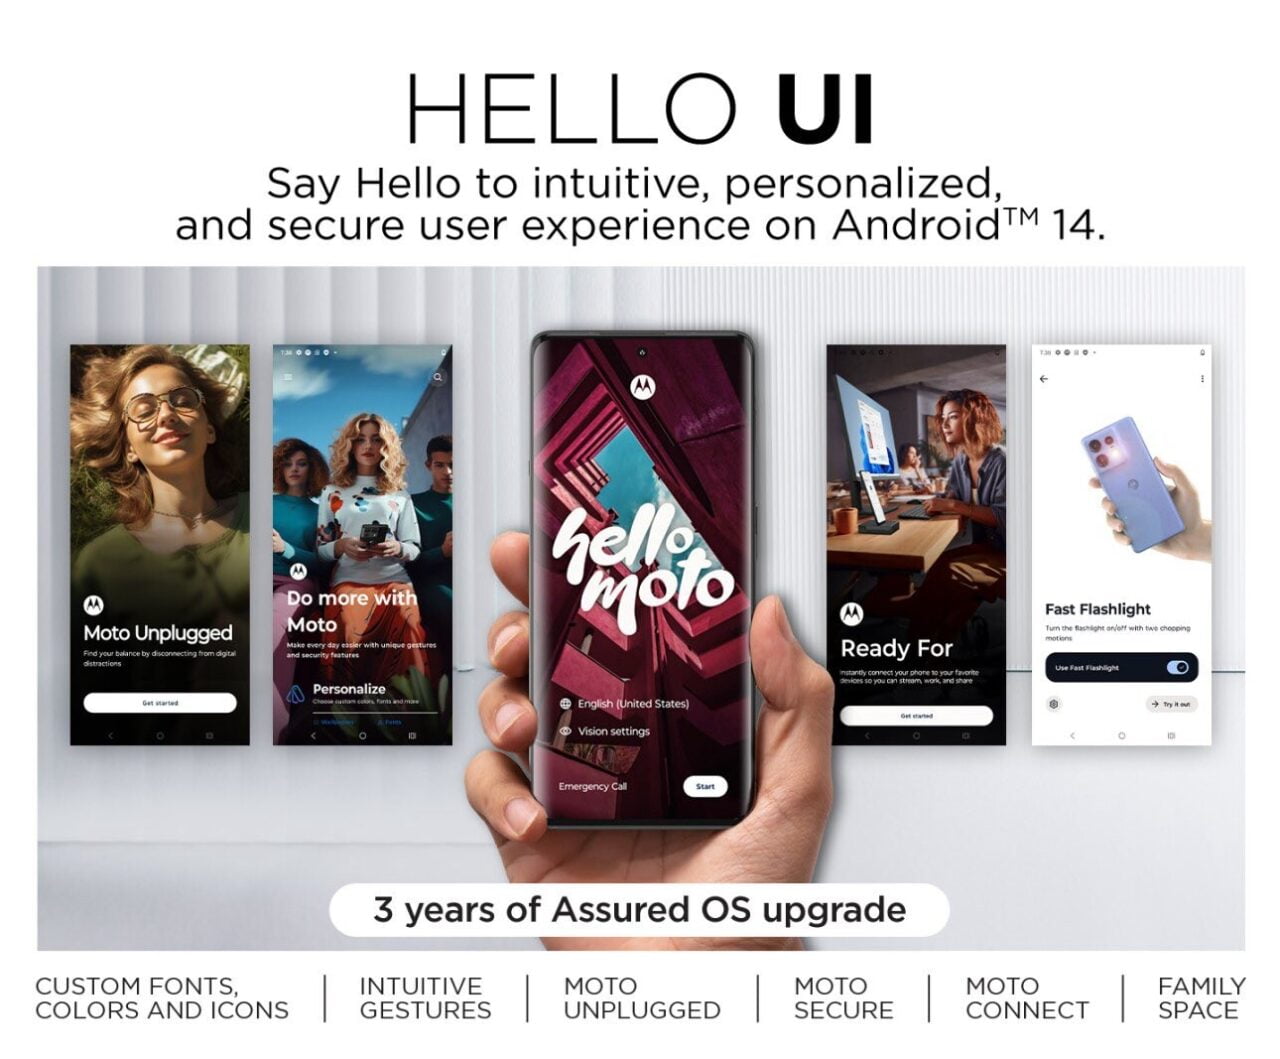 Reklama nowego interfejsu użytkownika HELLO UI dla Androida 14 prezentująca trzy smartfony z różnymi aplikacjami na ekranach oraz hasła opisujące funkcje, takie jak "CUSTOM FONTS, COLORS AND ICONS", "INTUITIVE GESTURES" i "3 years of Assured OS upgrade".